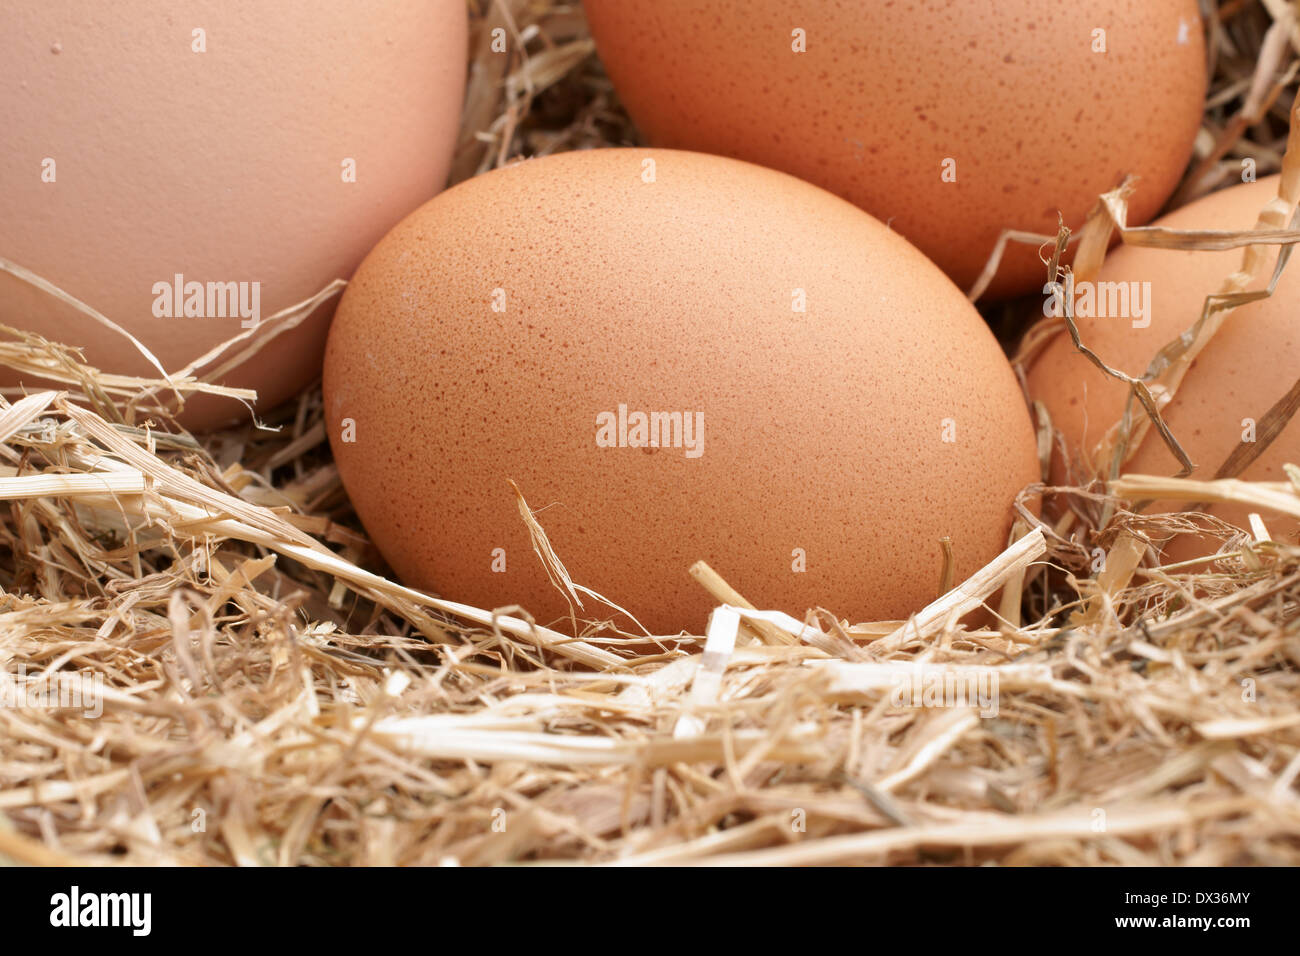 Recién sembradas free range gallinas huevos en un lecho de paja Foto de stock